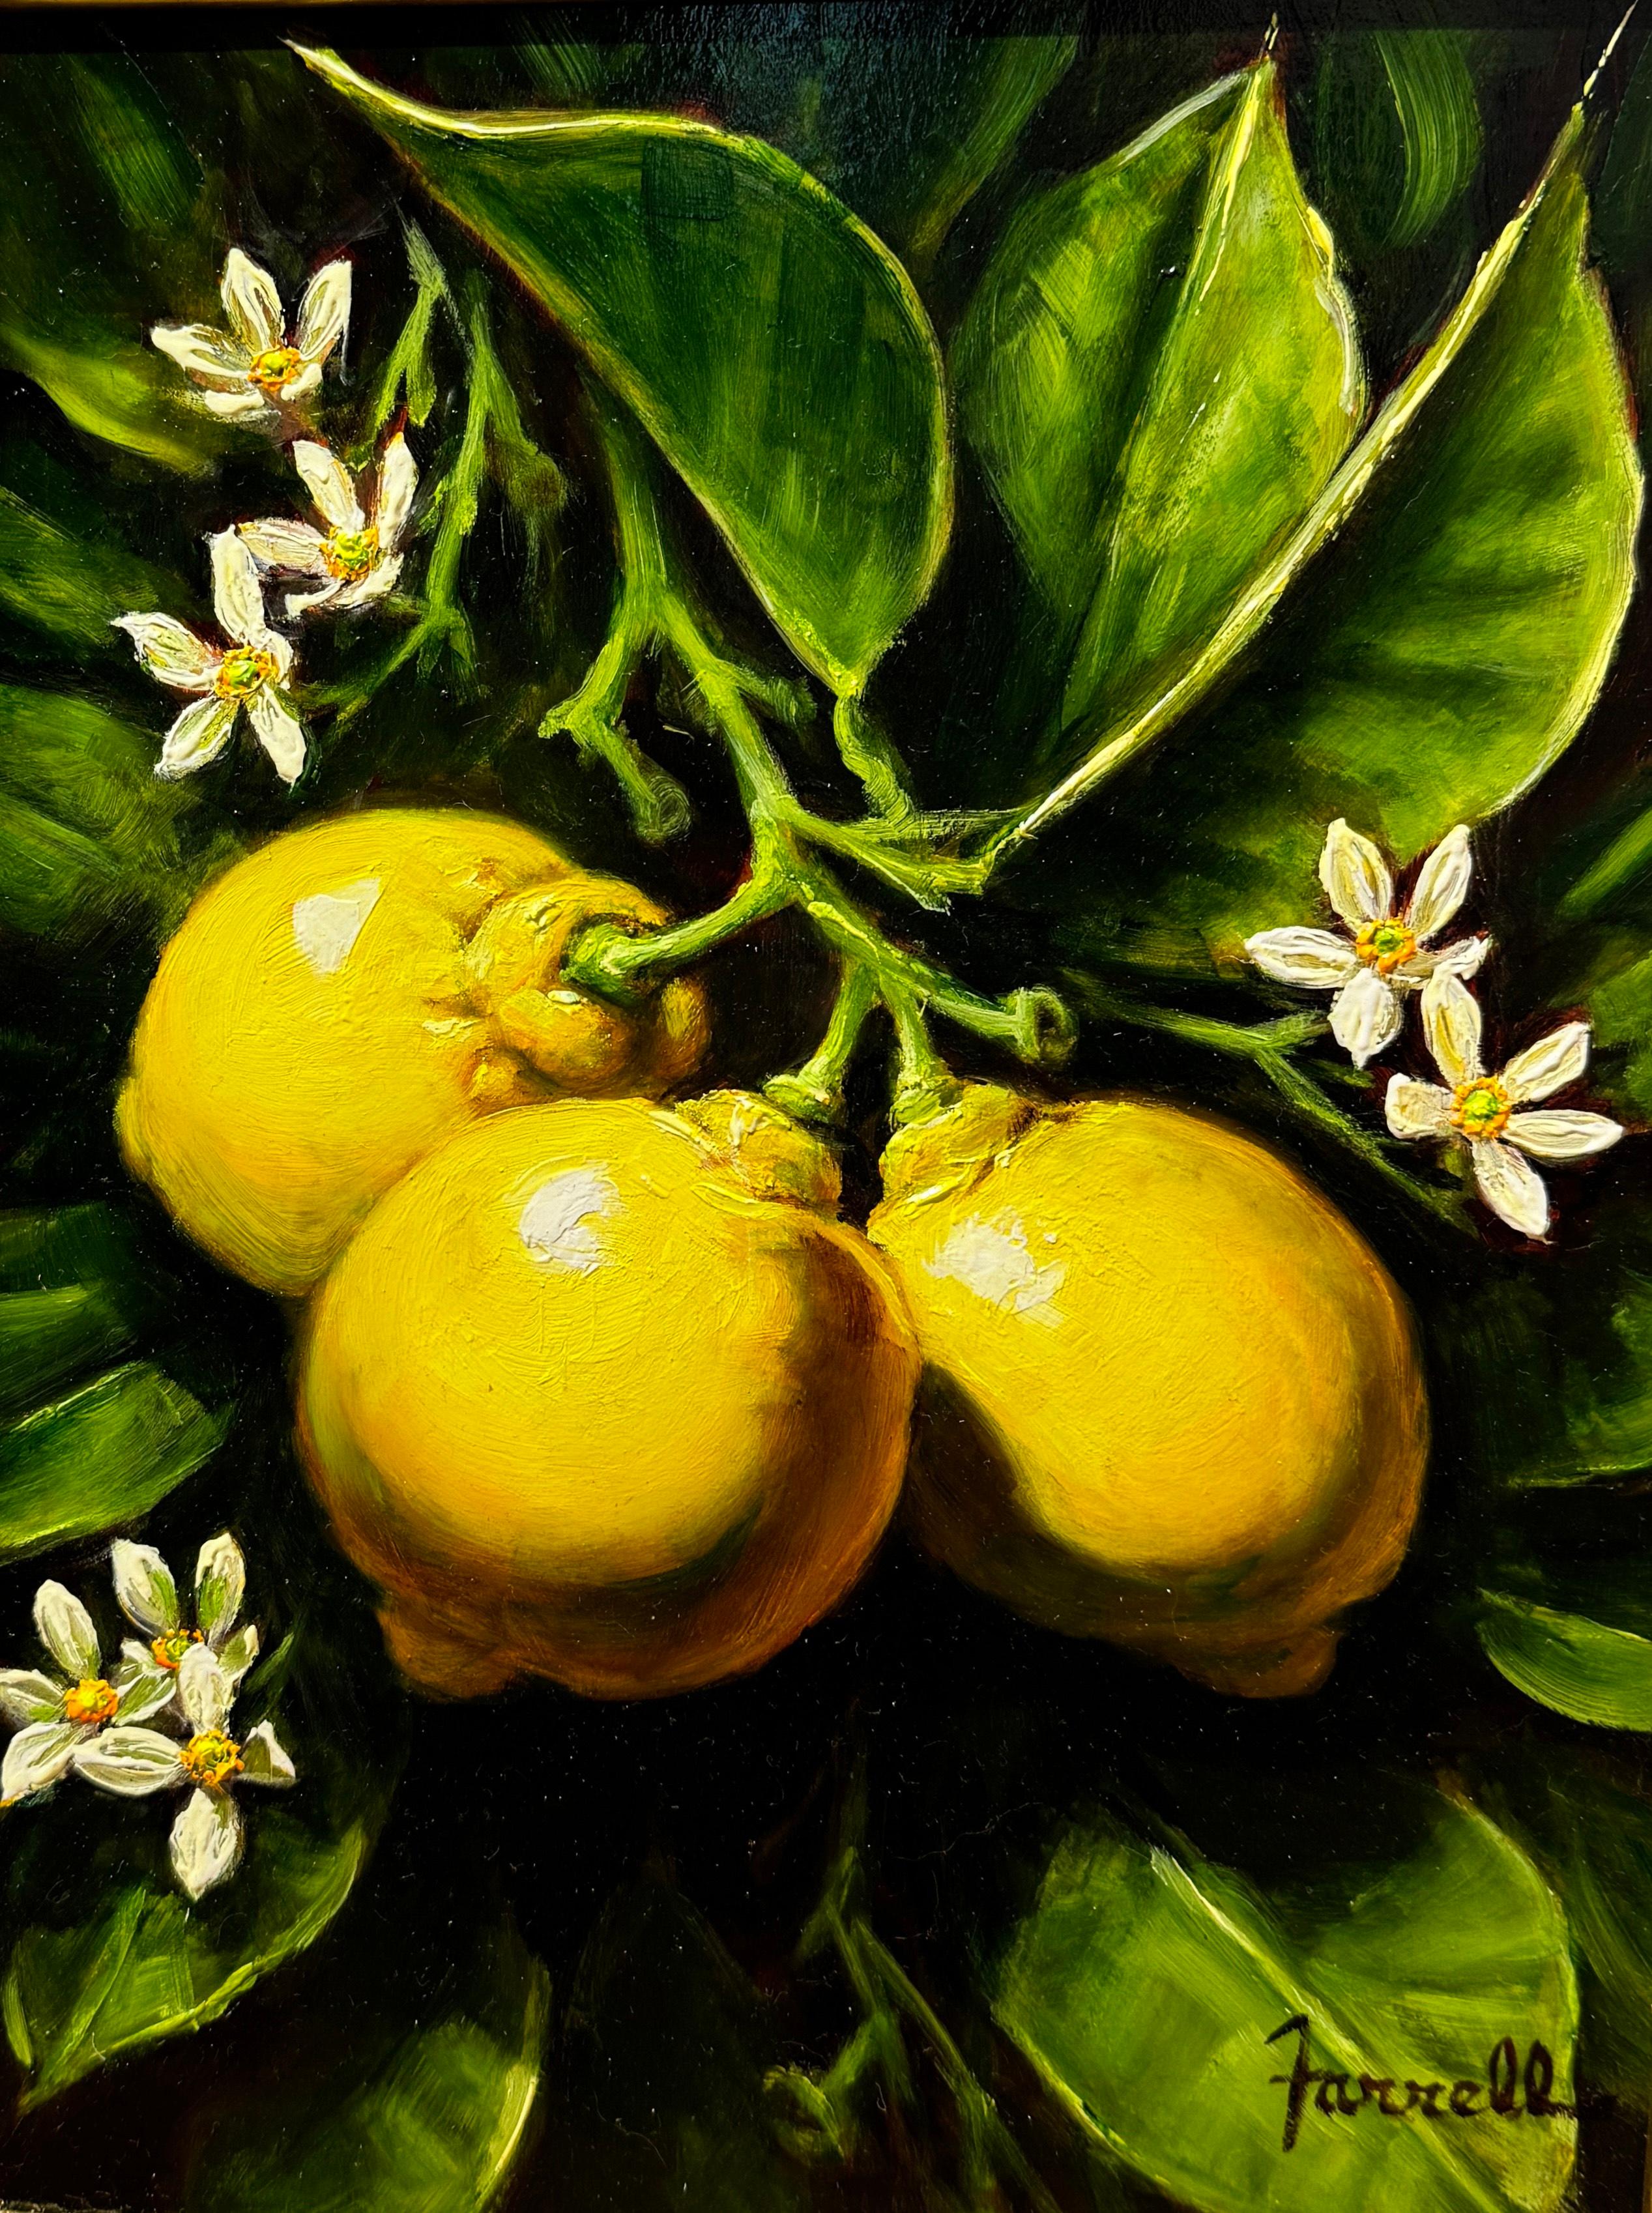 Sean Farrell, "Sweet Lemon Blossoms", 12x9 Lemon Fruit Still Life Oil Painting